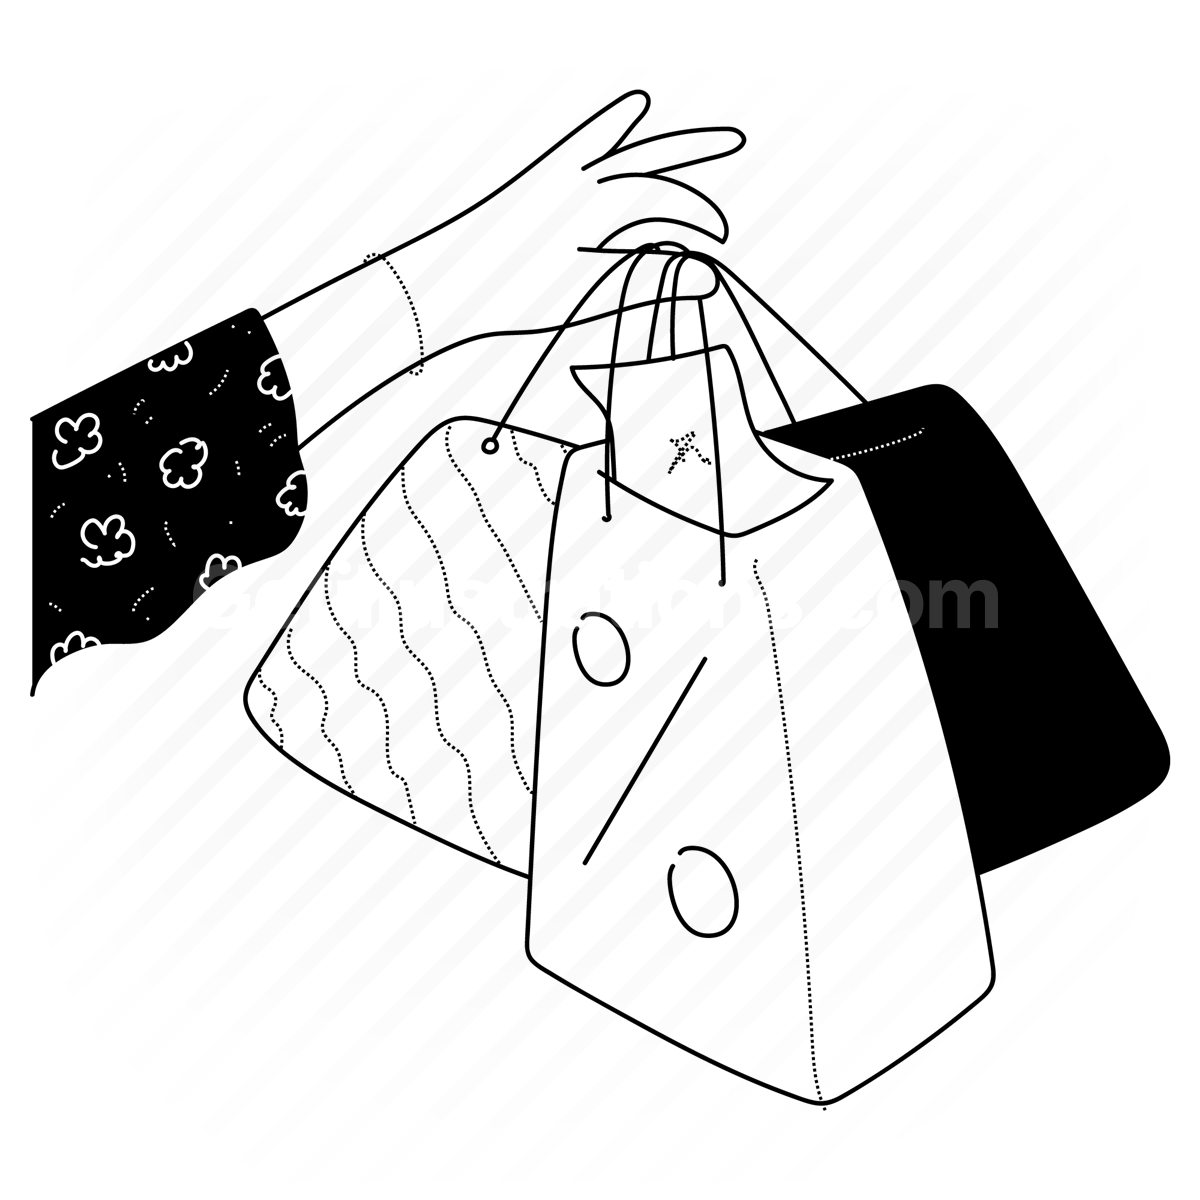 discount, sale, promotion, percentage, deals, bags, hand